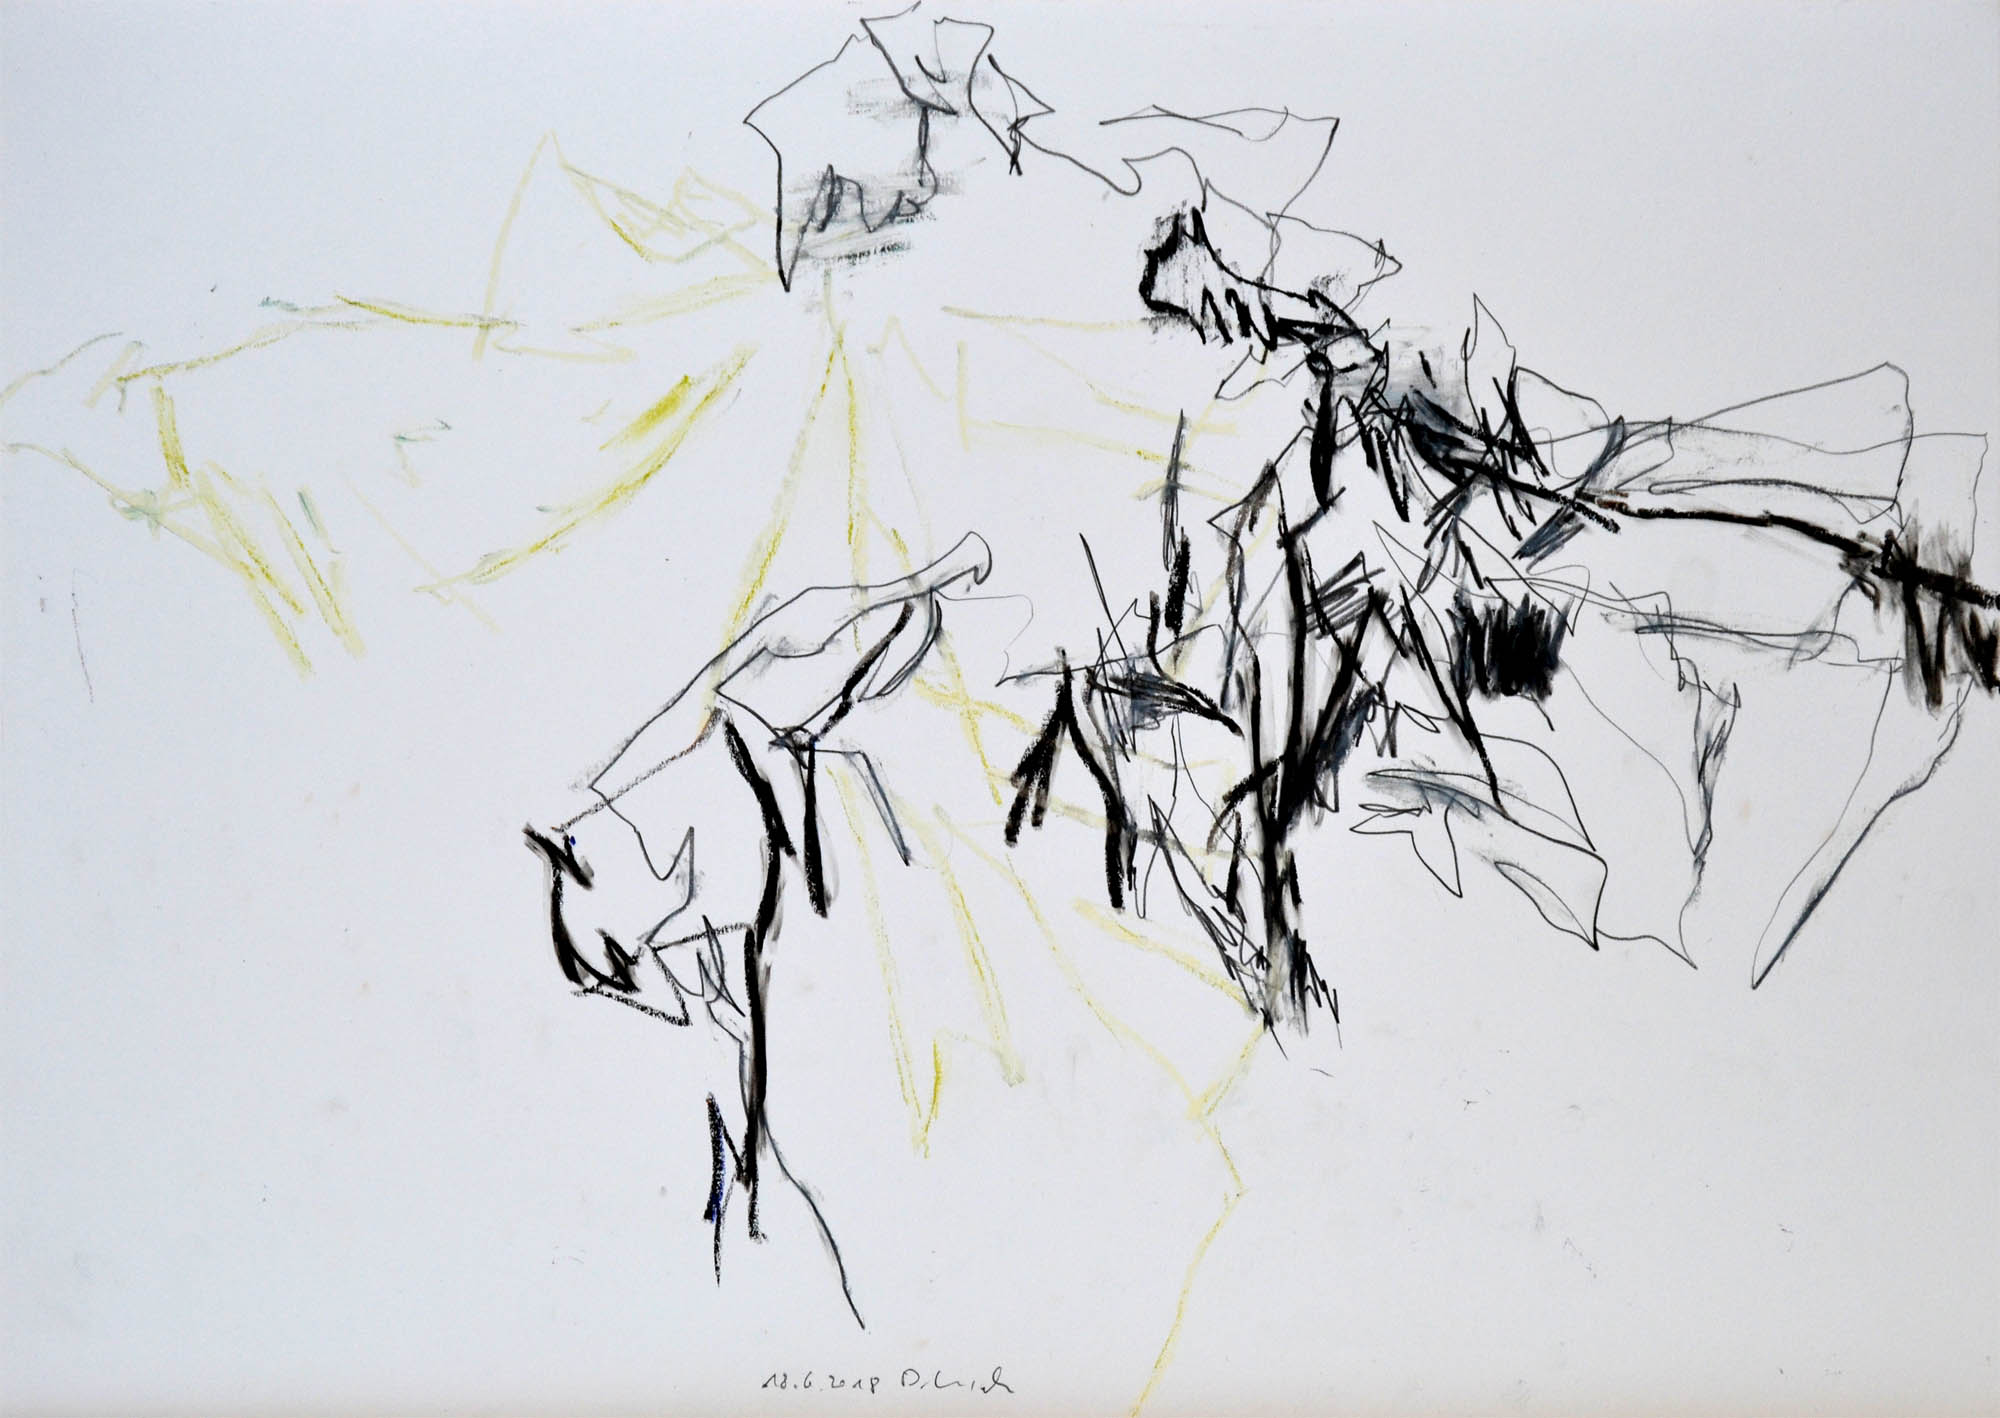 18. 6. 2018, Ölpastell und Bleistift auf Papier, 36,5 x 51 cm © Dieter Konsek